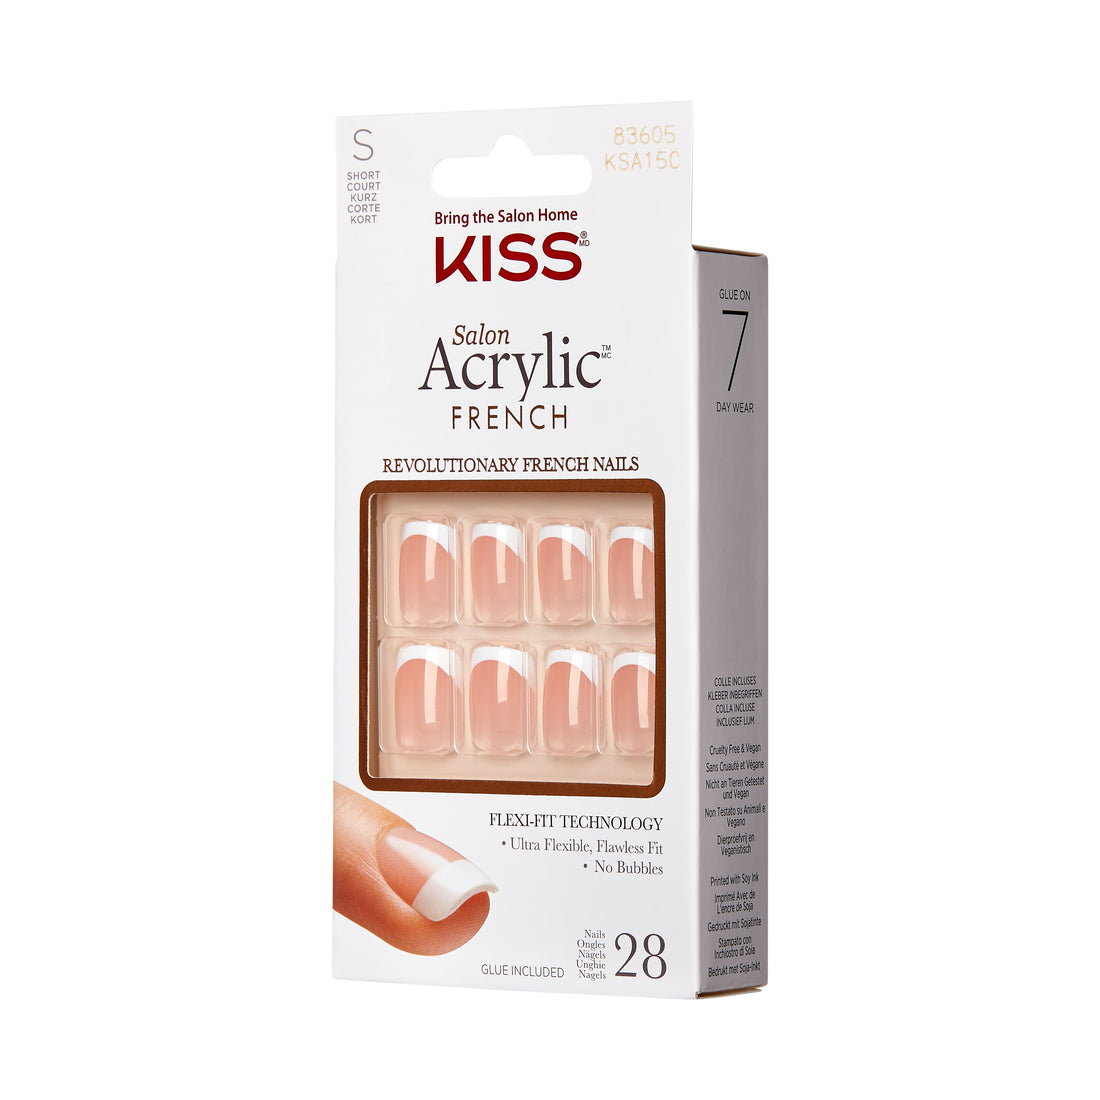 KISS Salon Acrylic French Nail Kit- Bonjour